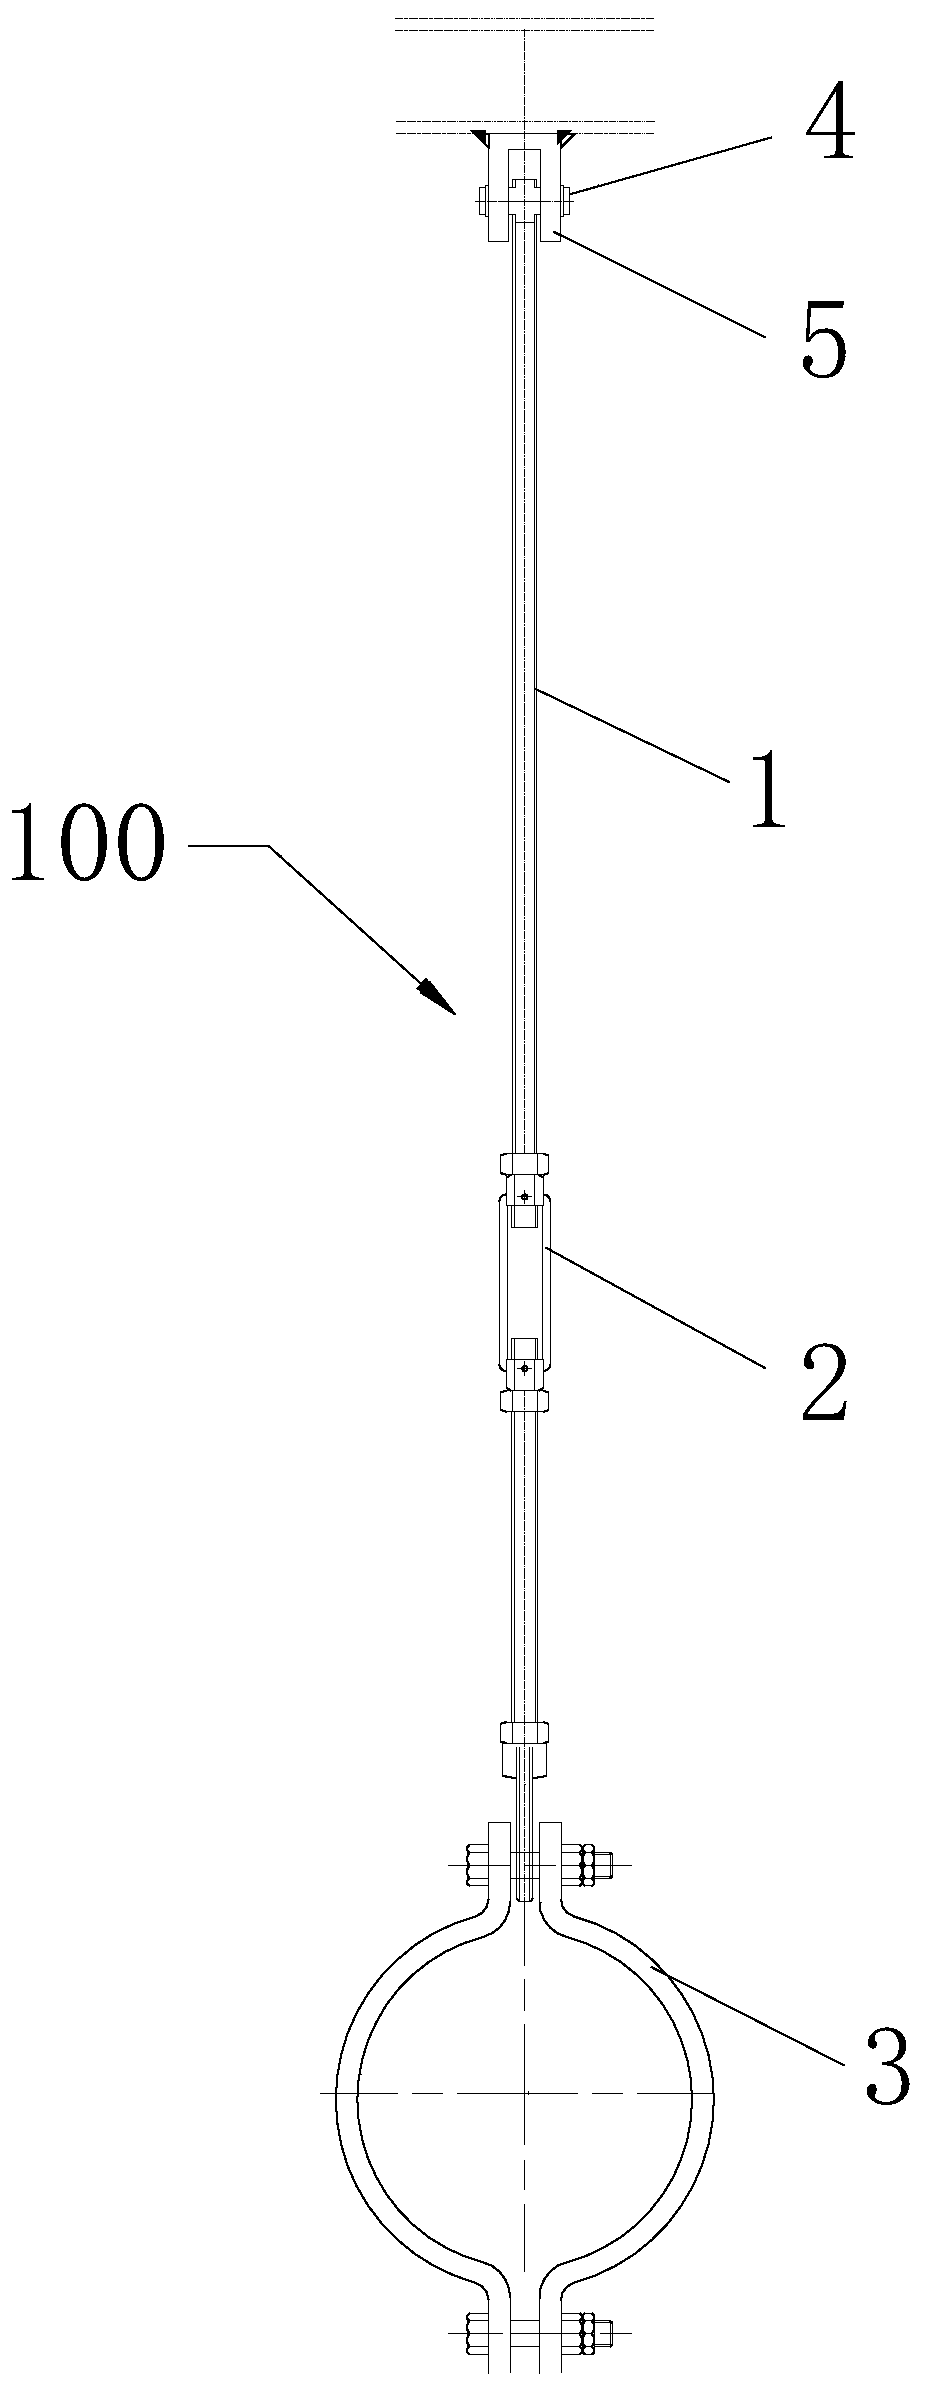 In-service rigid hanger load measurement method